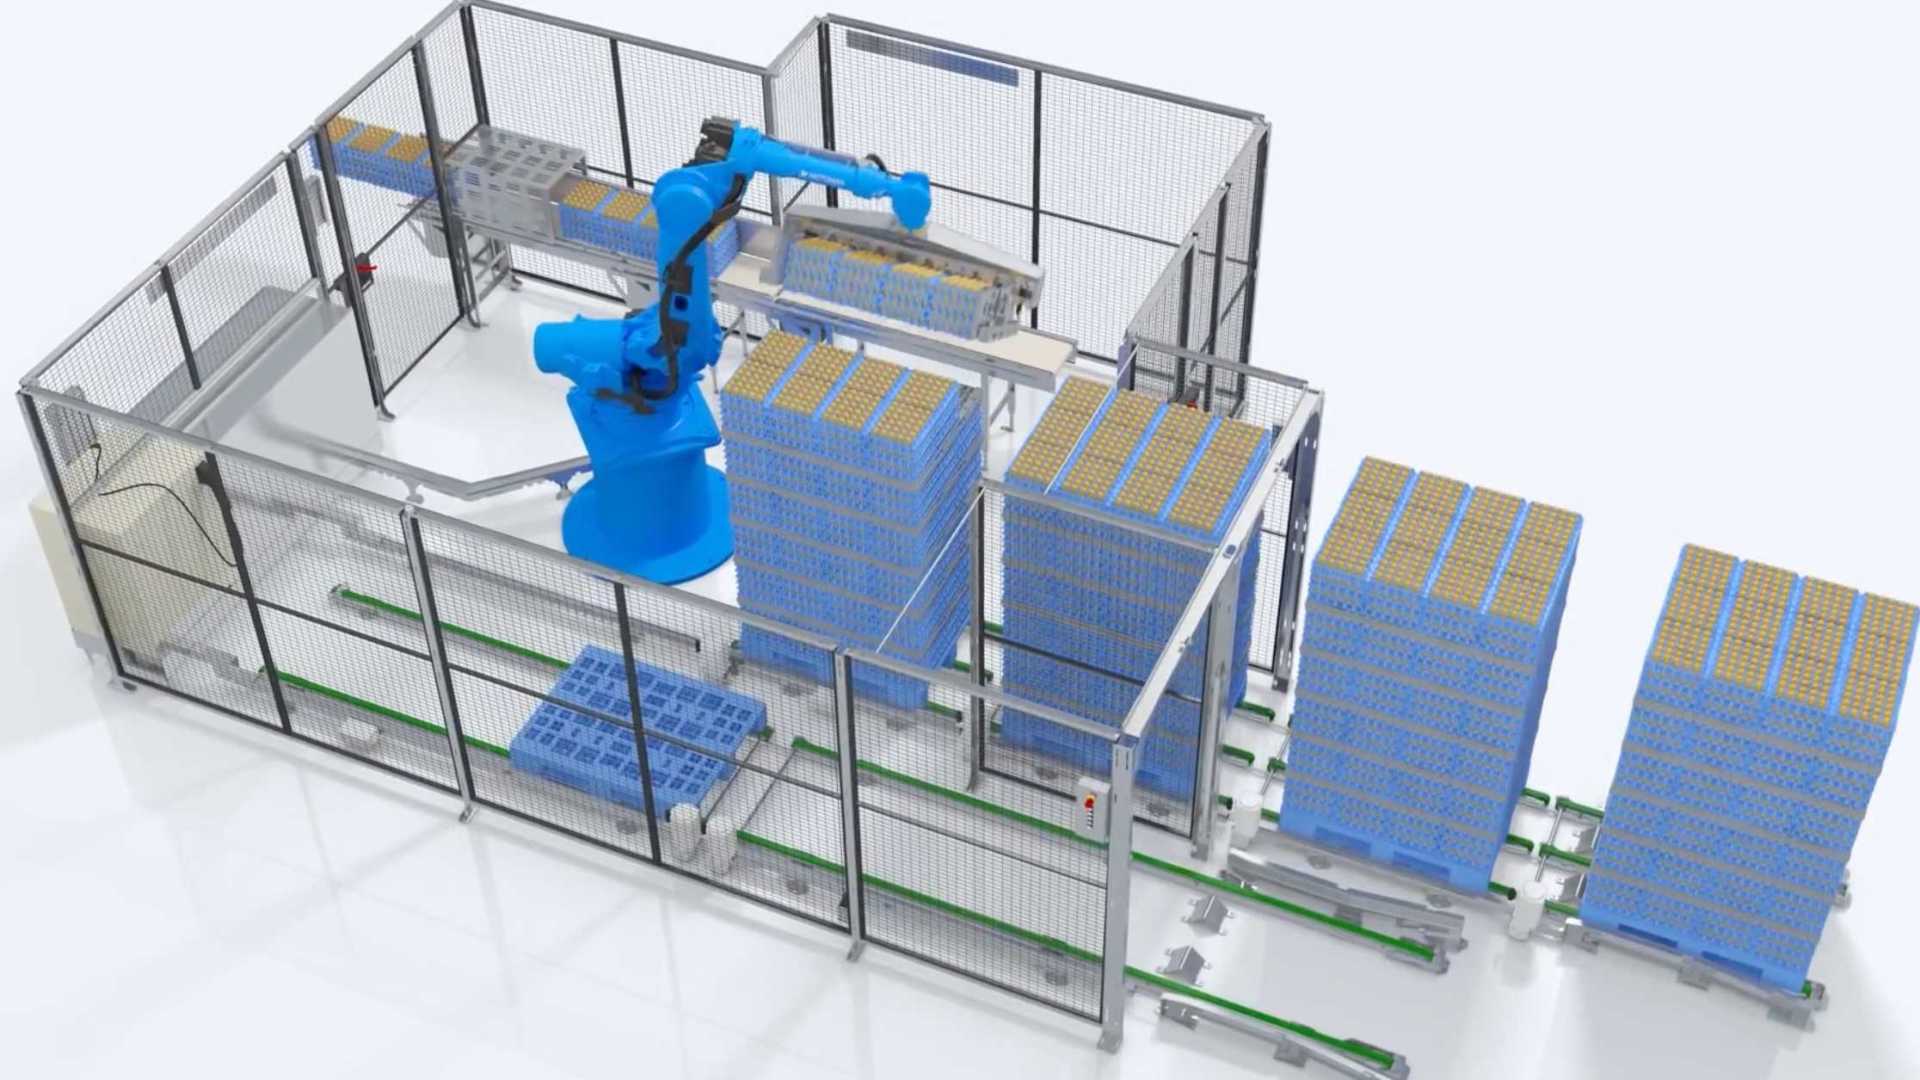 搬运机器人工业生产线机械机床设备演示流程工艺模拟3D三维动画制作公司